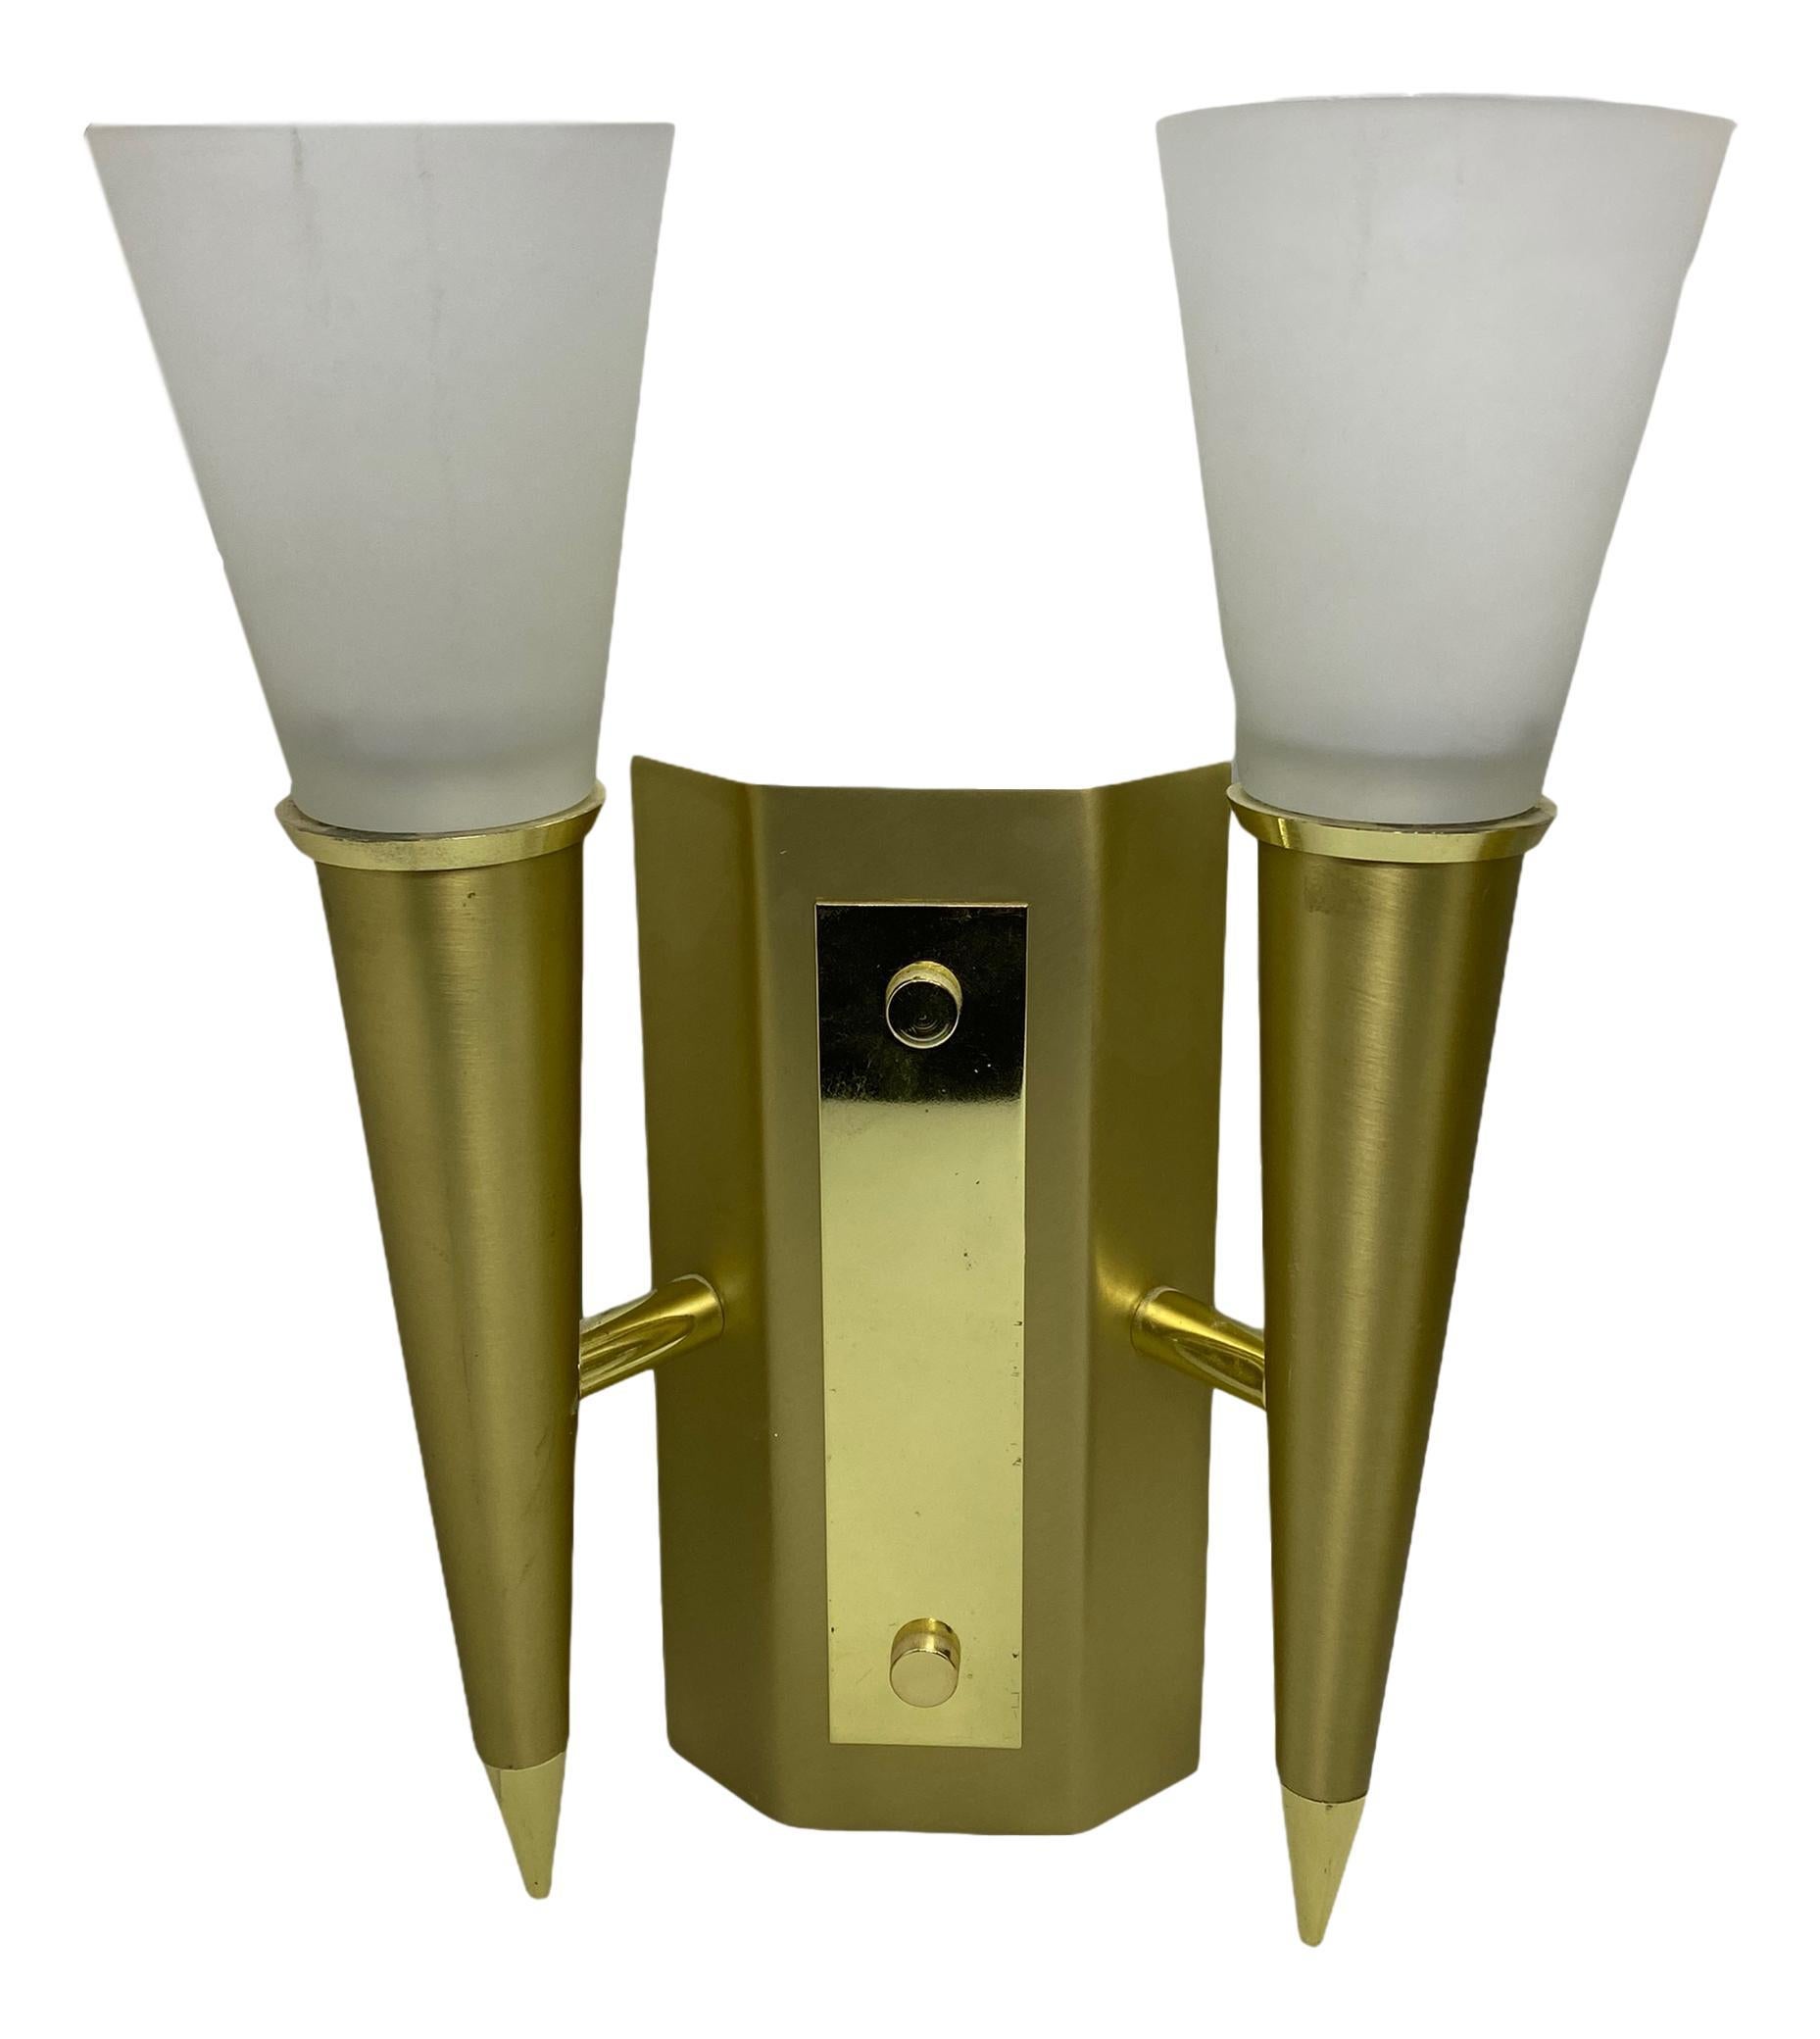 Paire d'appliques de style Art Déco en forme de torche. Chaque luminaire nécessite deux ampoules européennes E14 candélabres, chaque ampoule pouvant atteindre 40 watts. Les appliques murales ont une belle patine et donnent à chaque pièce un